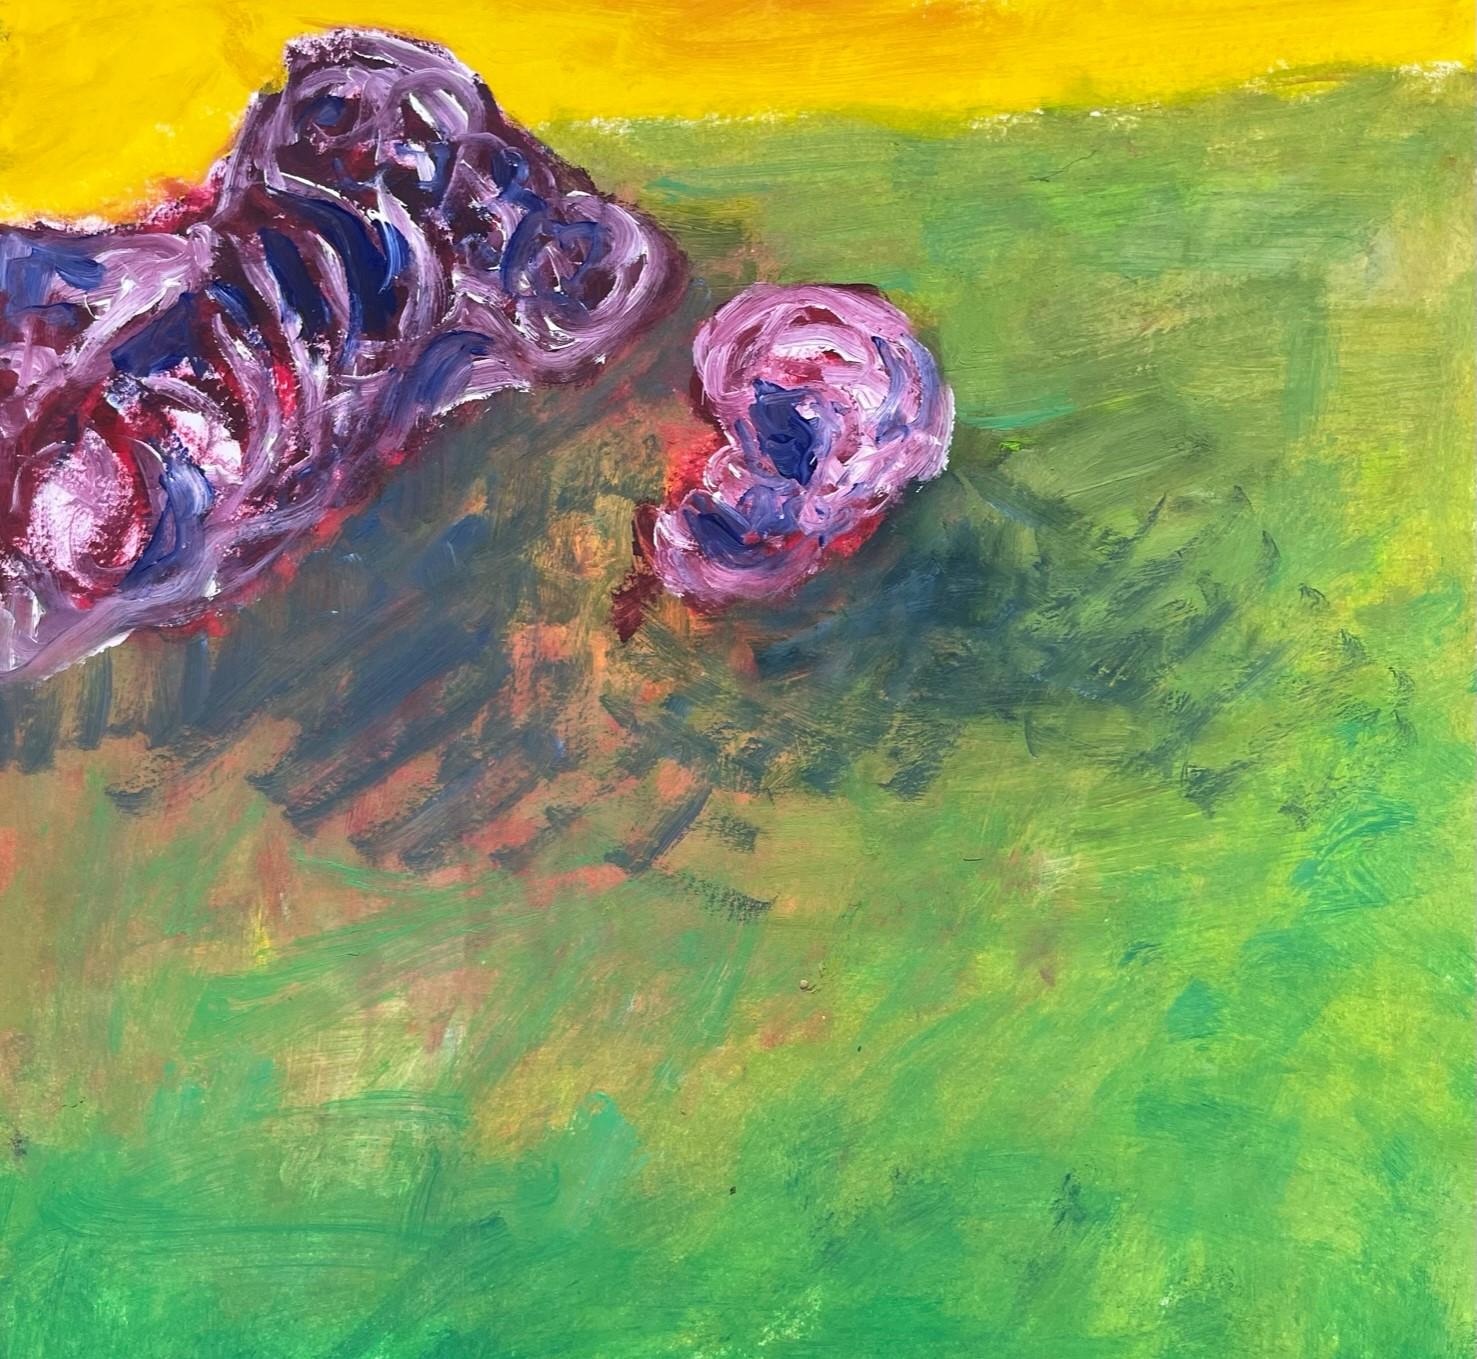 Remains (Body in the Field 14) – Zeitgenössisch, grün, gelb, rosa, 21. Jahrhundert (Grün), Figurative Art, von Zsolt Berszán